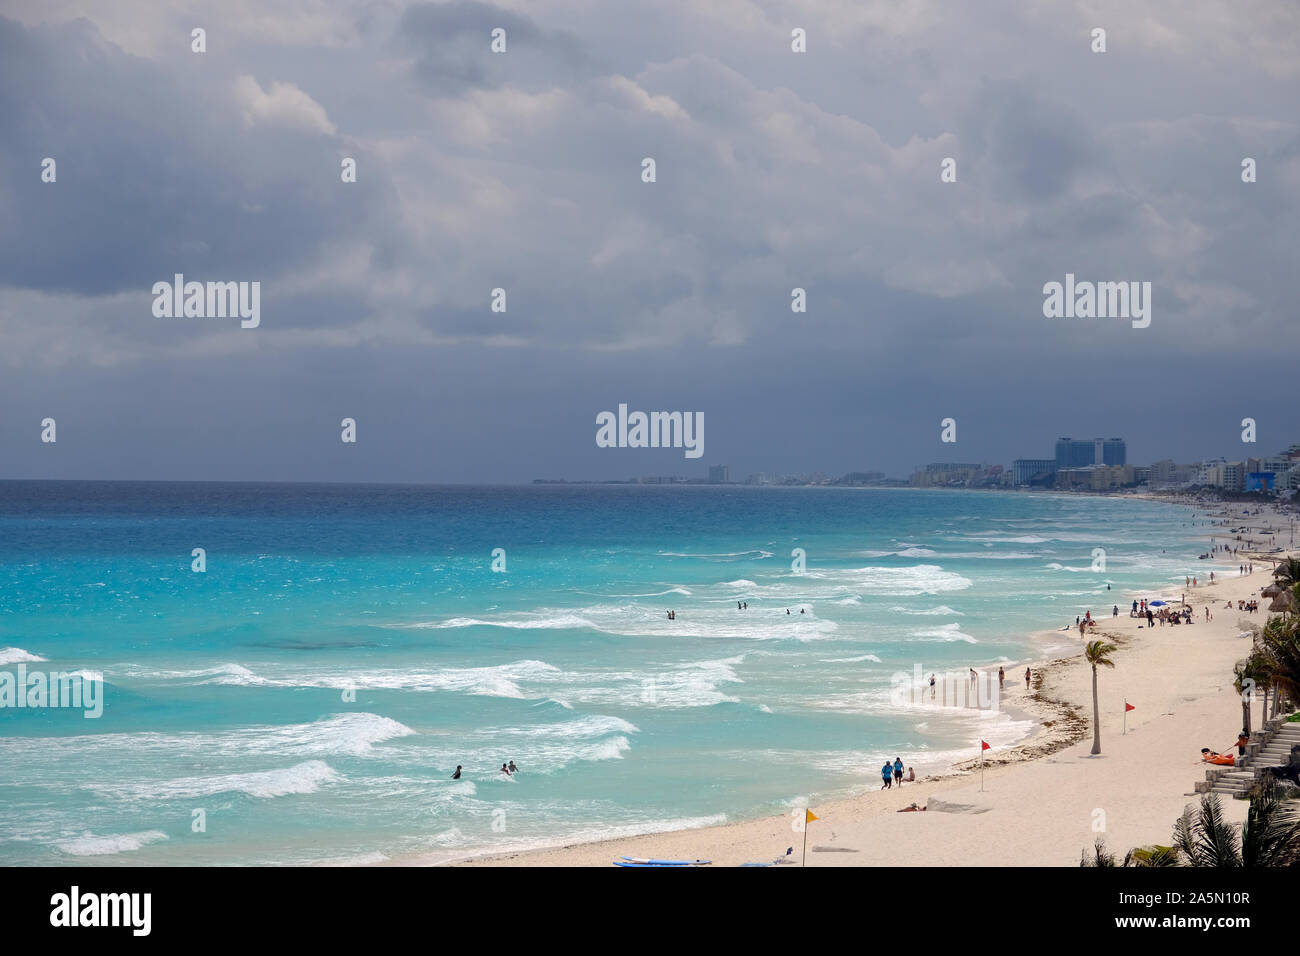 Wonderful Beaches - Mexico Cancun Chac Mool Beach Stock Photo